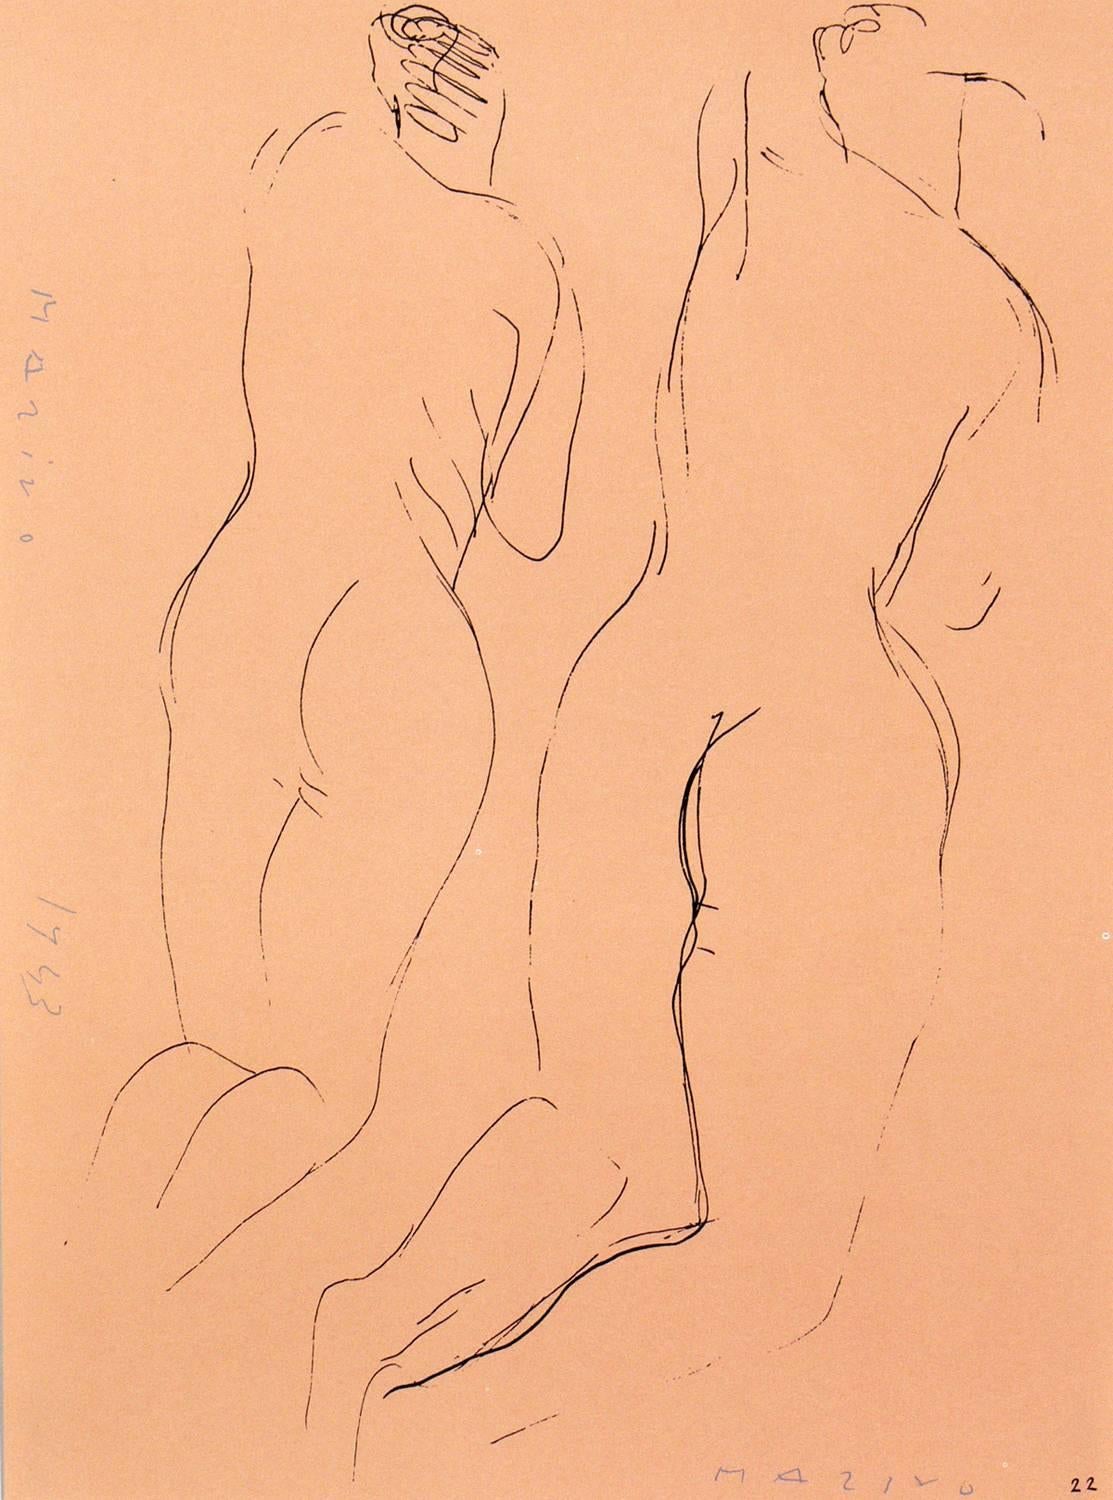 Paire de lithographies de nus figuratifs de Marino Marini, provenant du portefeuille de Marino Marini, imprimées par Carl Schünemann, Allemagne, vers 1968. Ils ont été encadrés dans des cadres de galerie en laque noire aux lignes épurées.